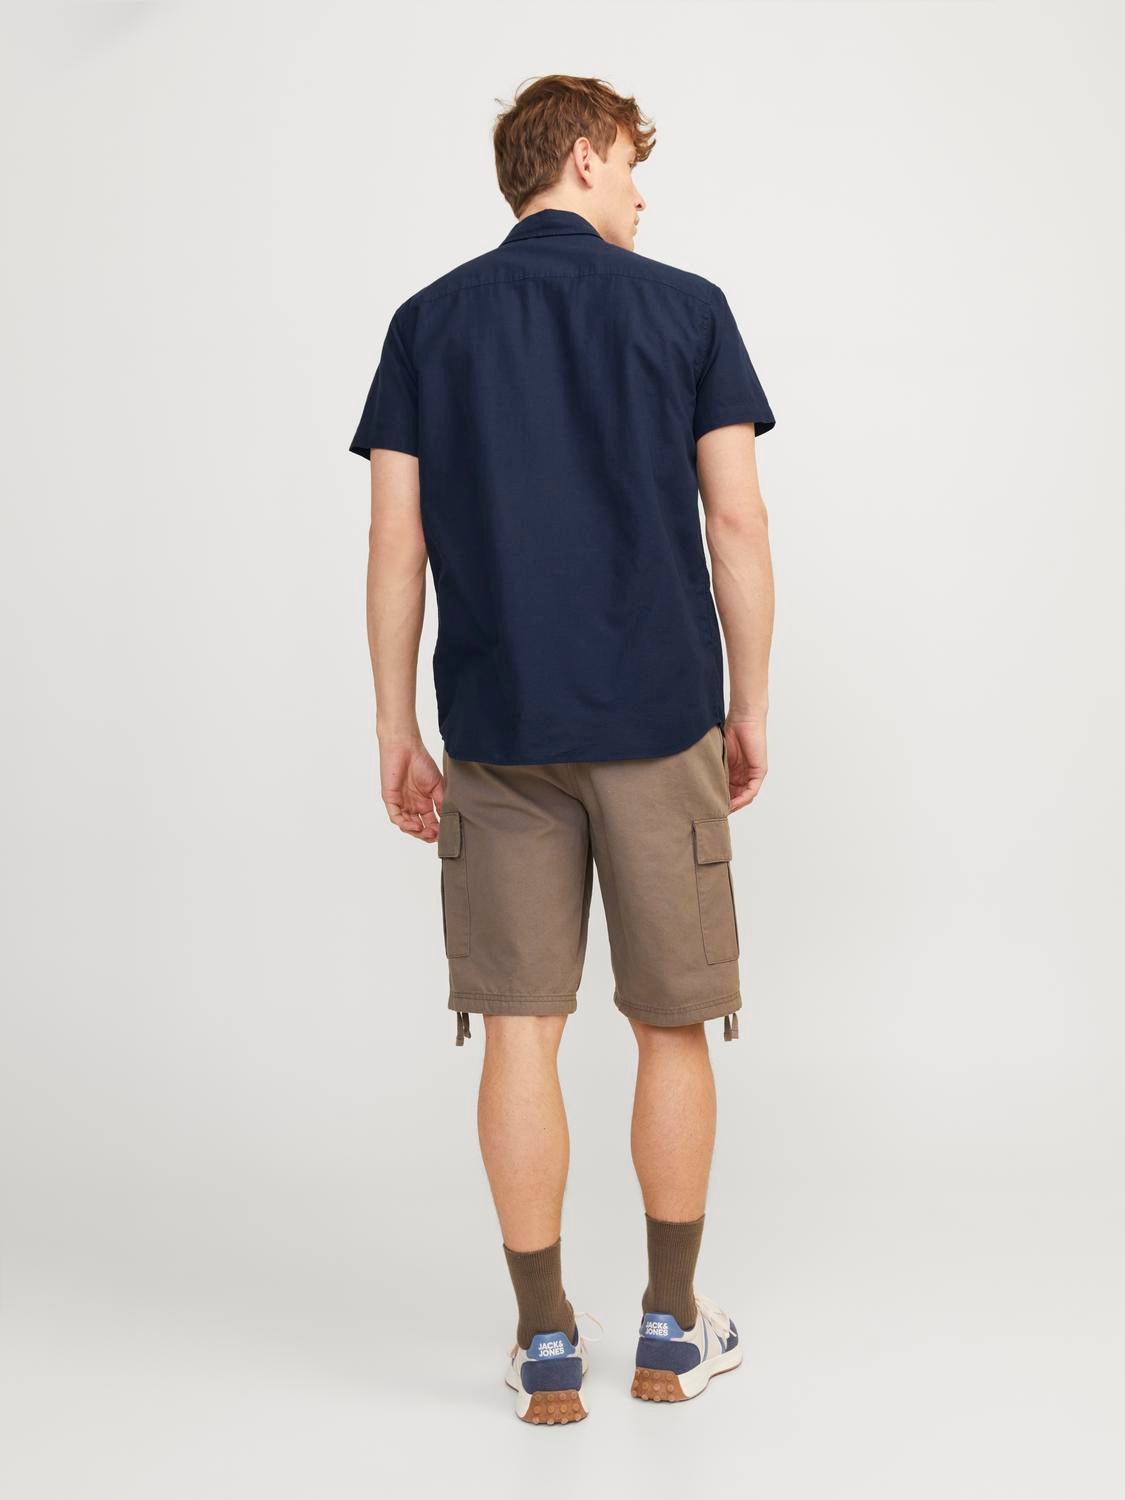 Jack & Jones Comfort Fit Skjorte -Navy Blazer - 12248383